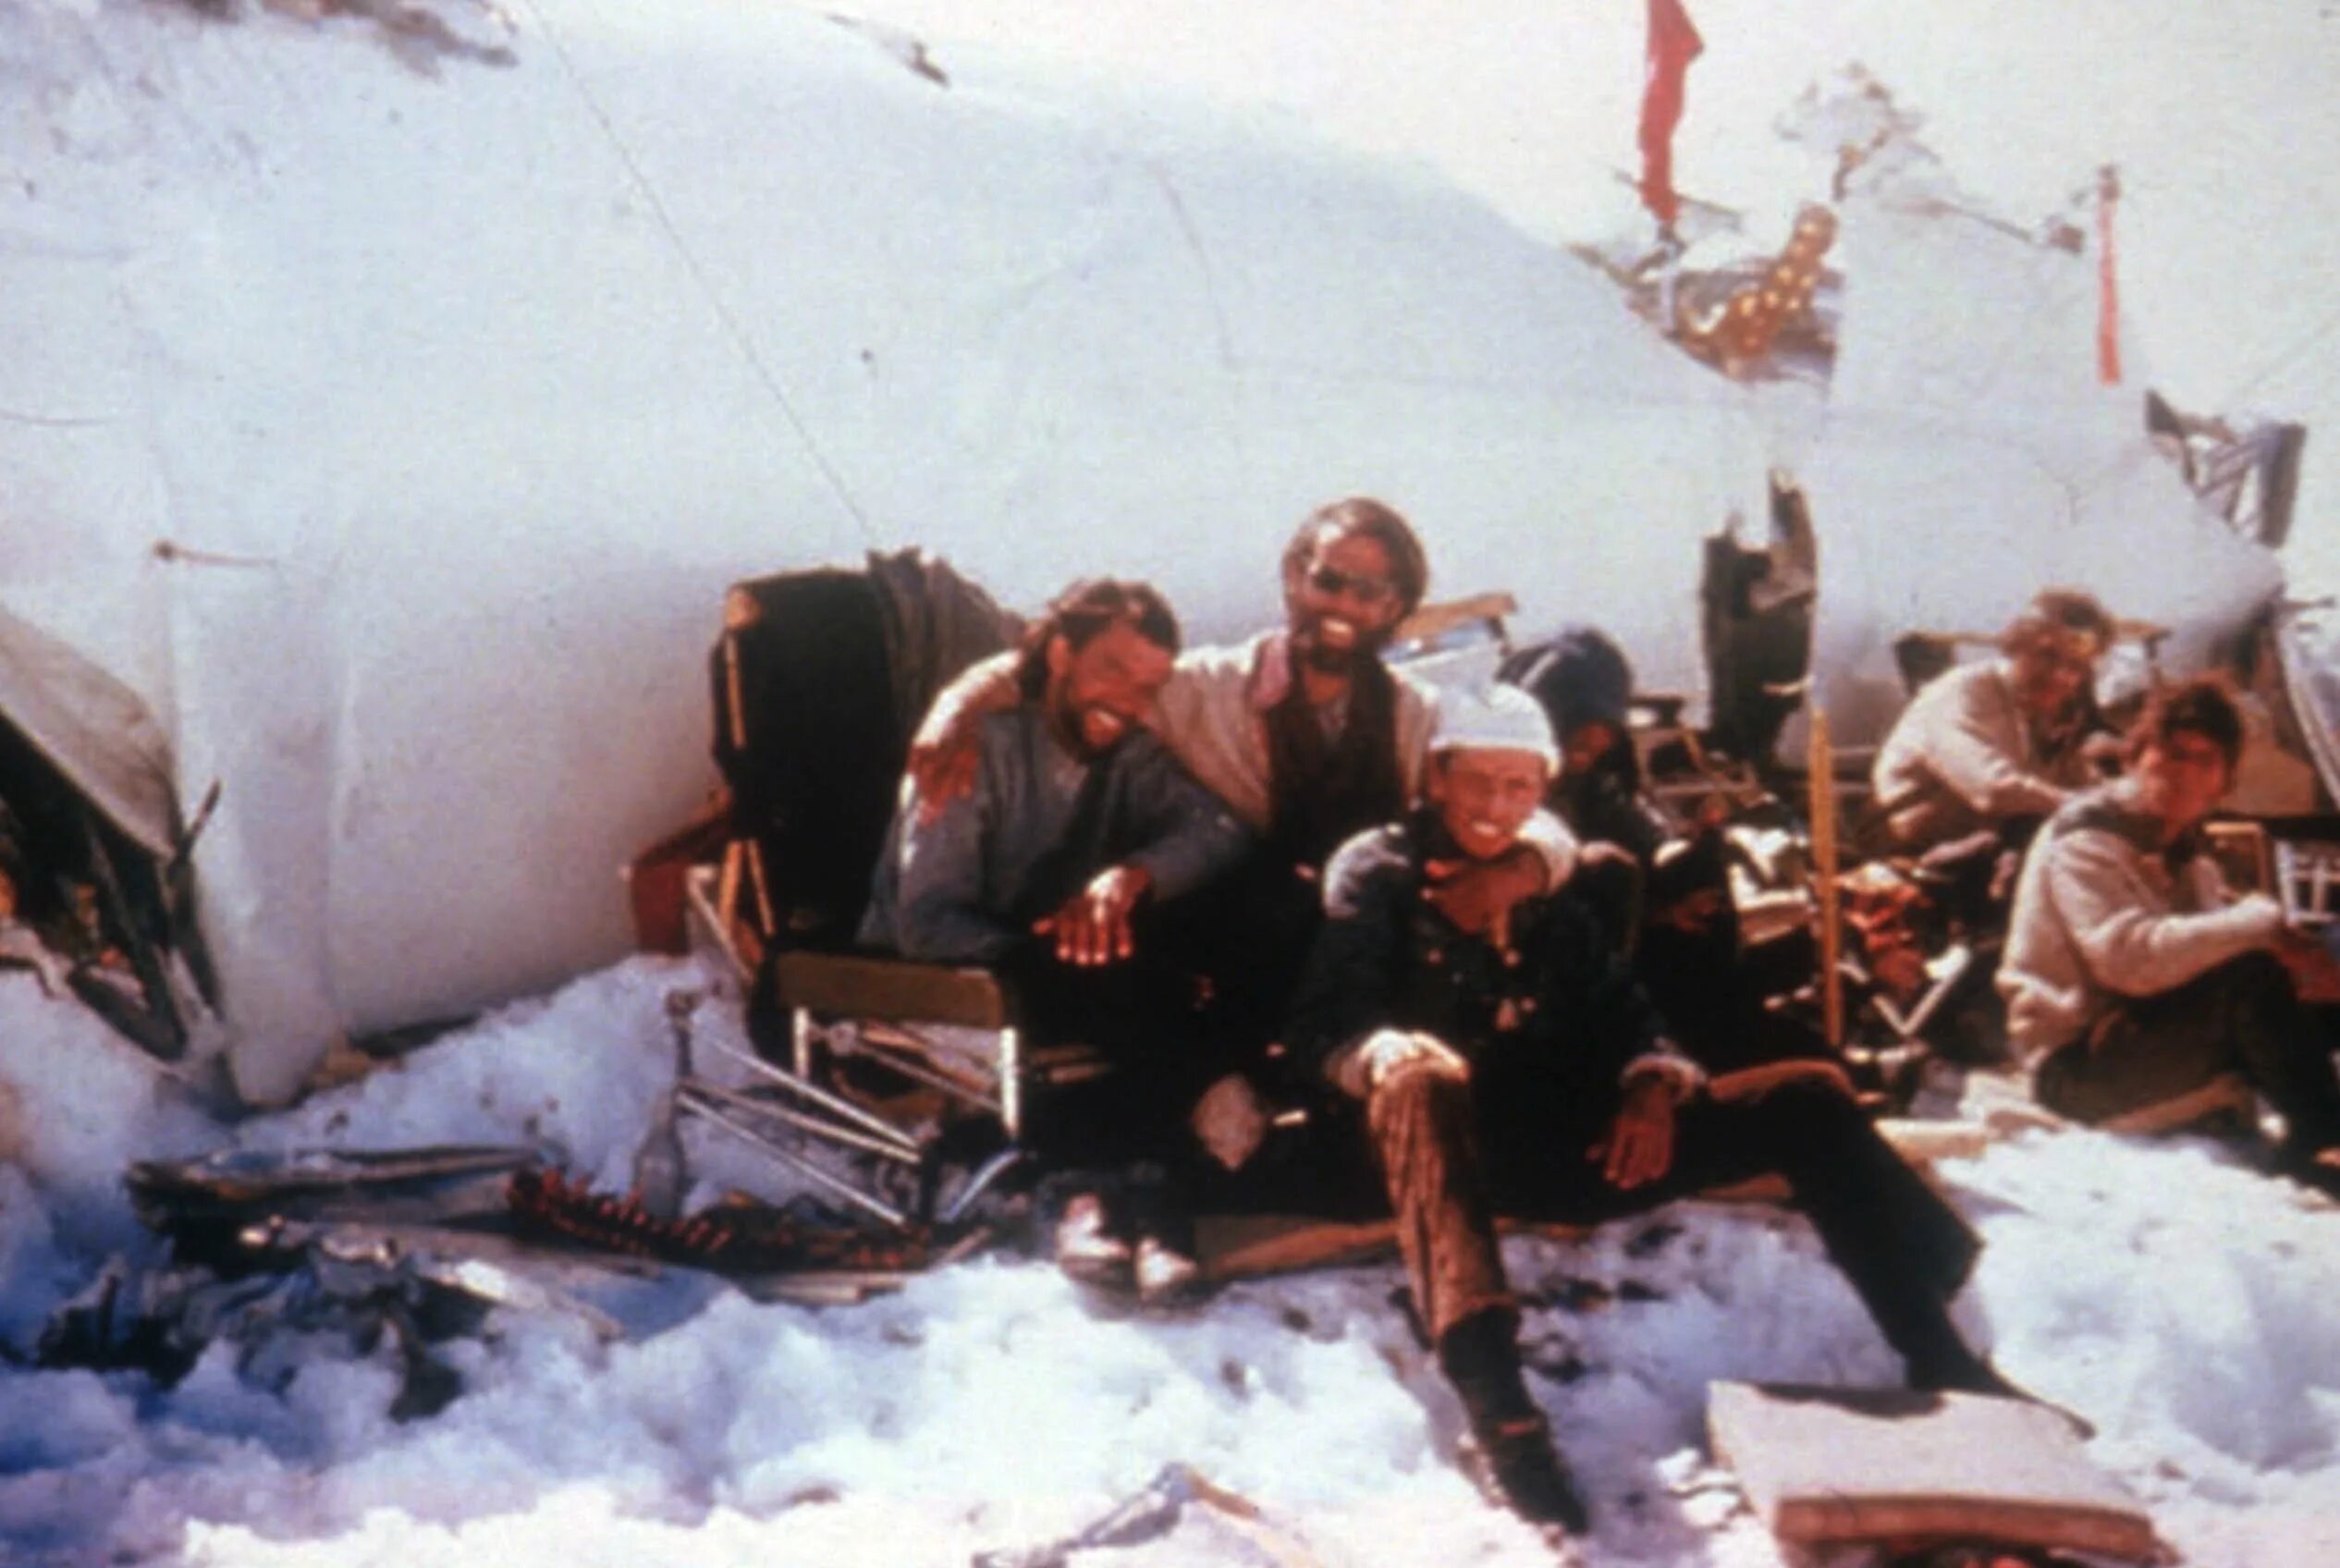 Самолет разбившийся в Андах в 1972. Авиакатастрофа в Чили 1972. Уругвай авиакатастрофа